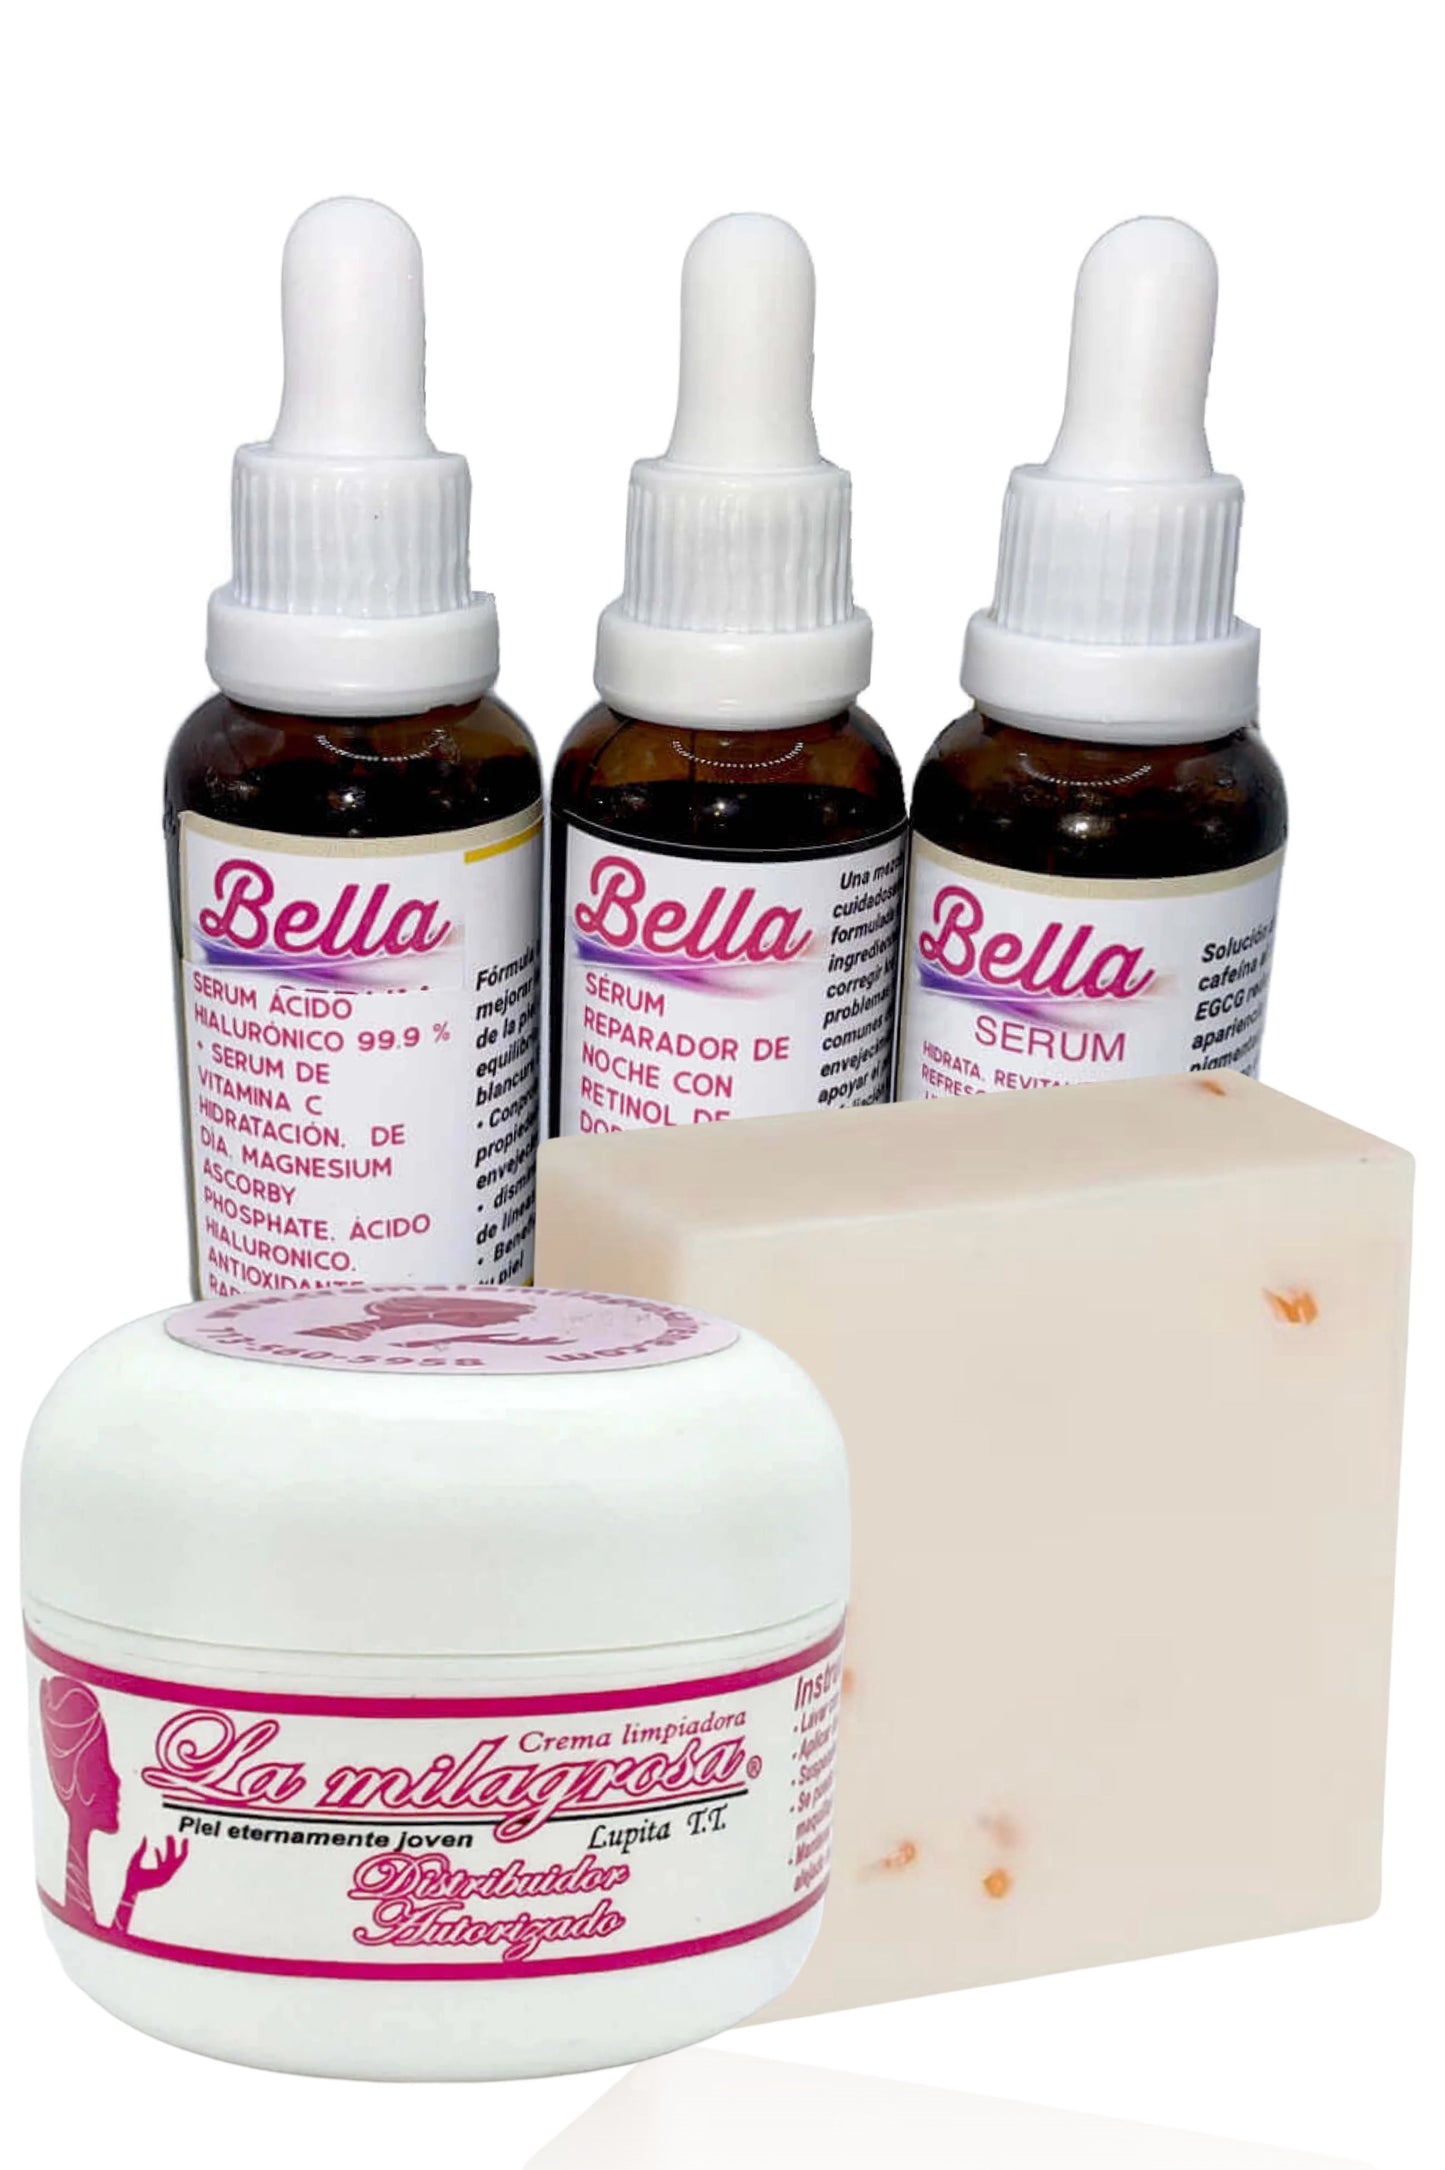 1- Bella serum kit